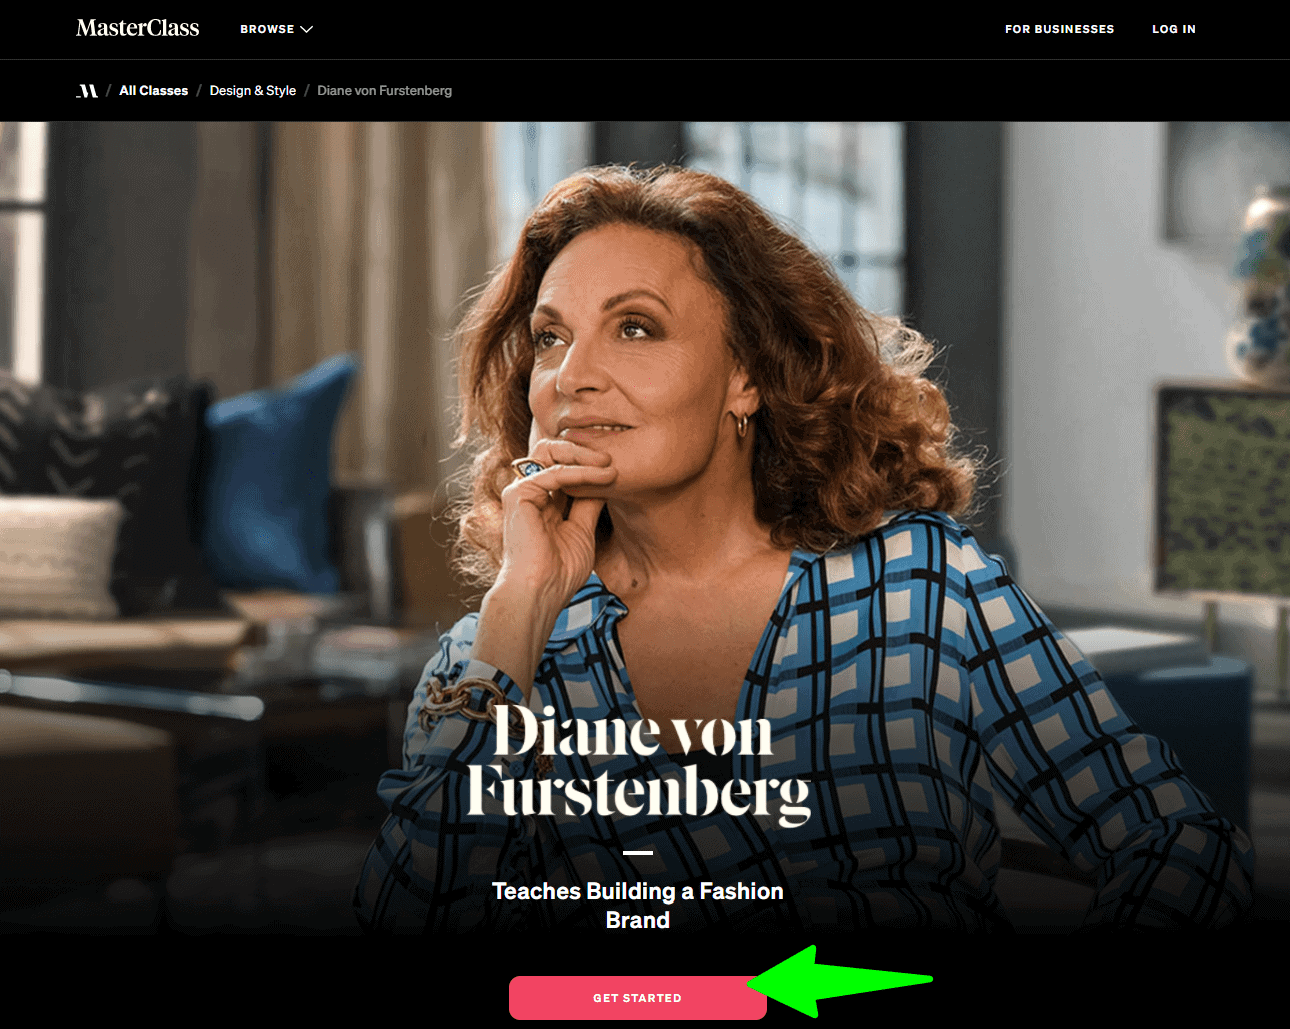 Diane Von Furstenberg Masterclass - Overview